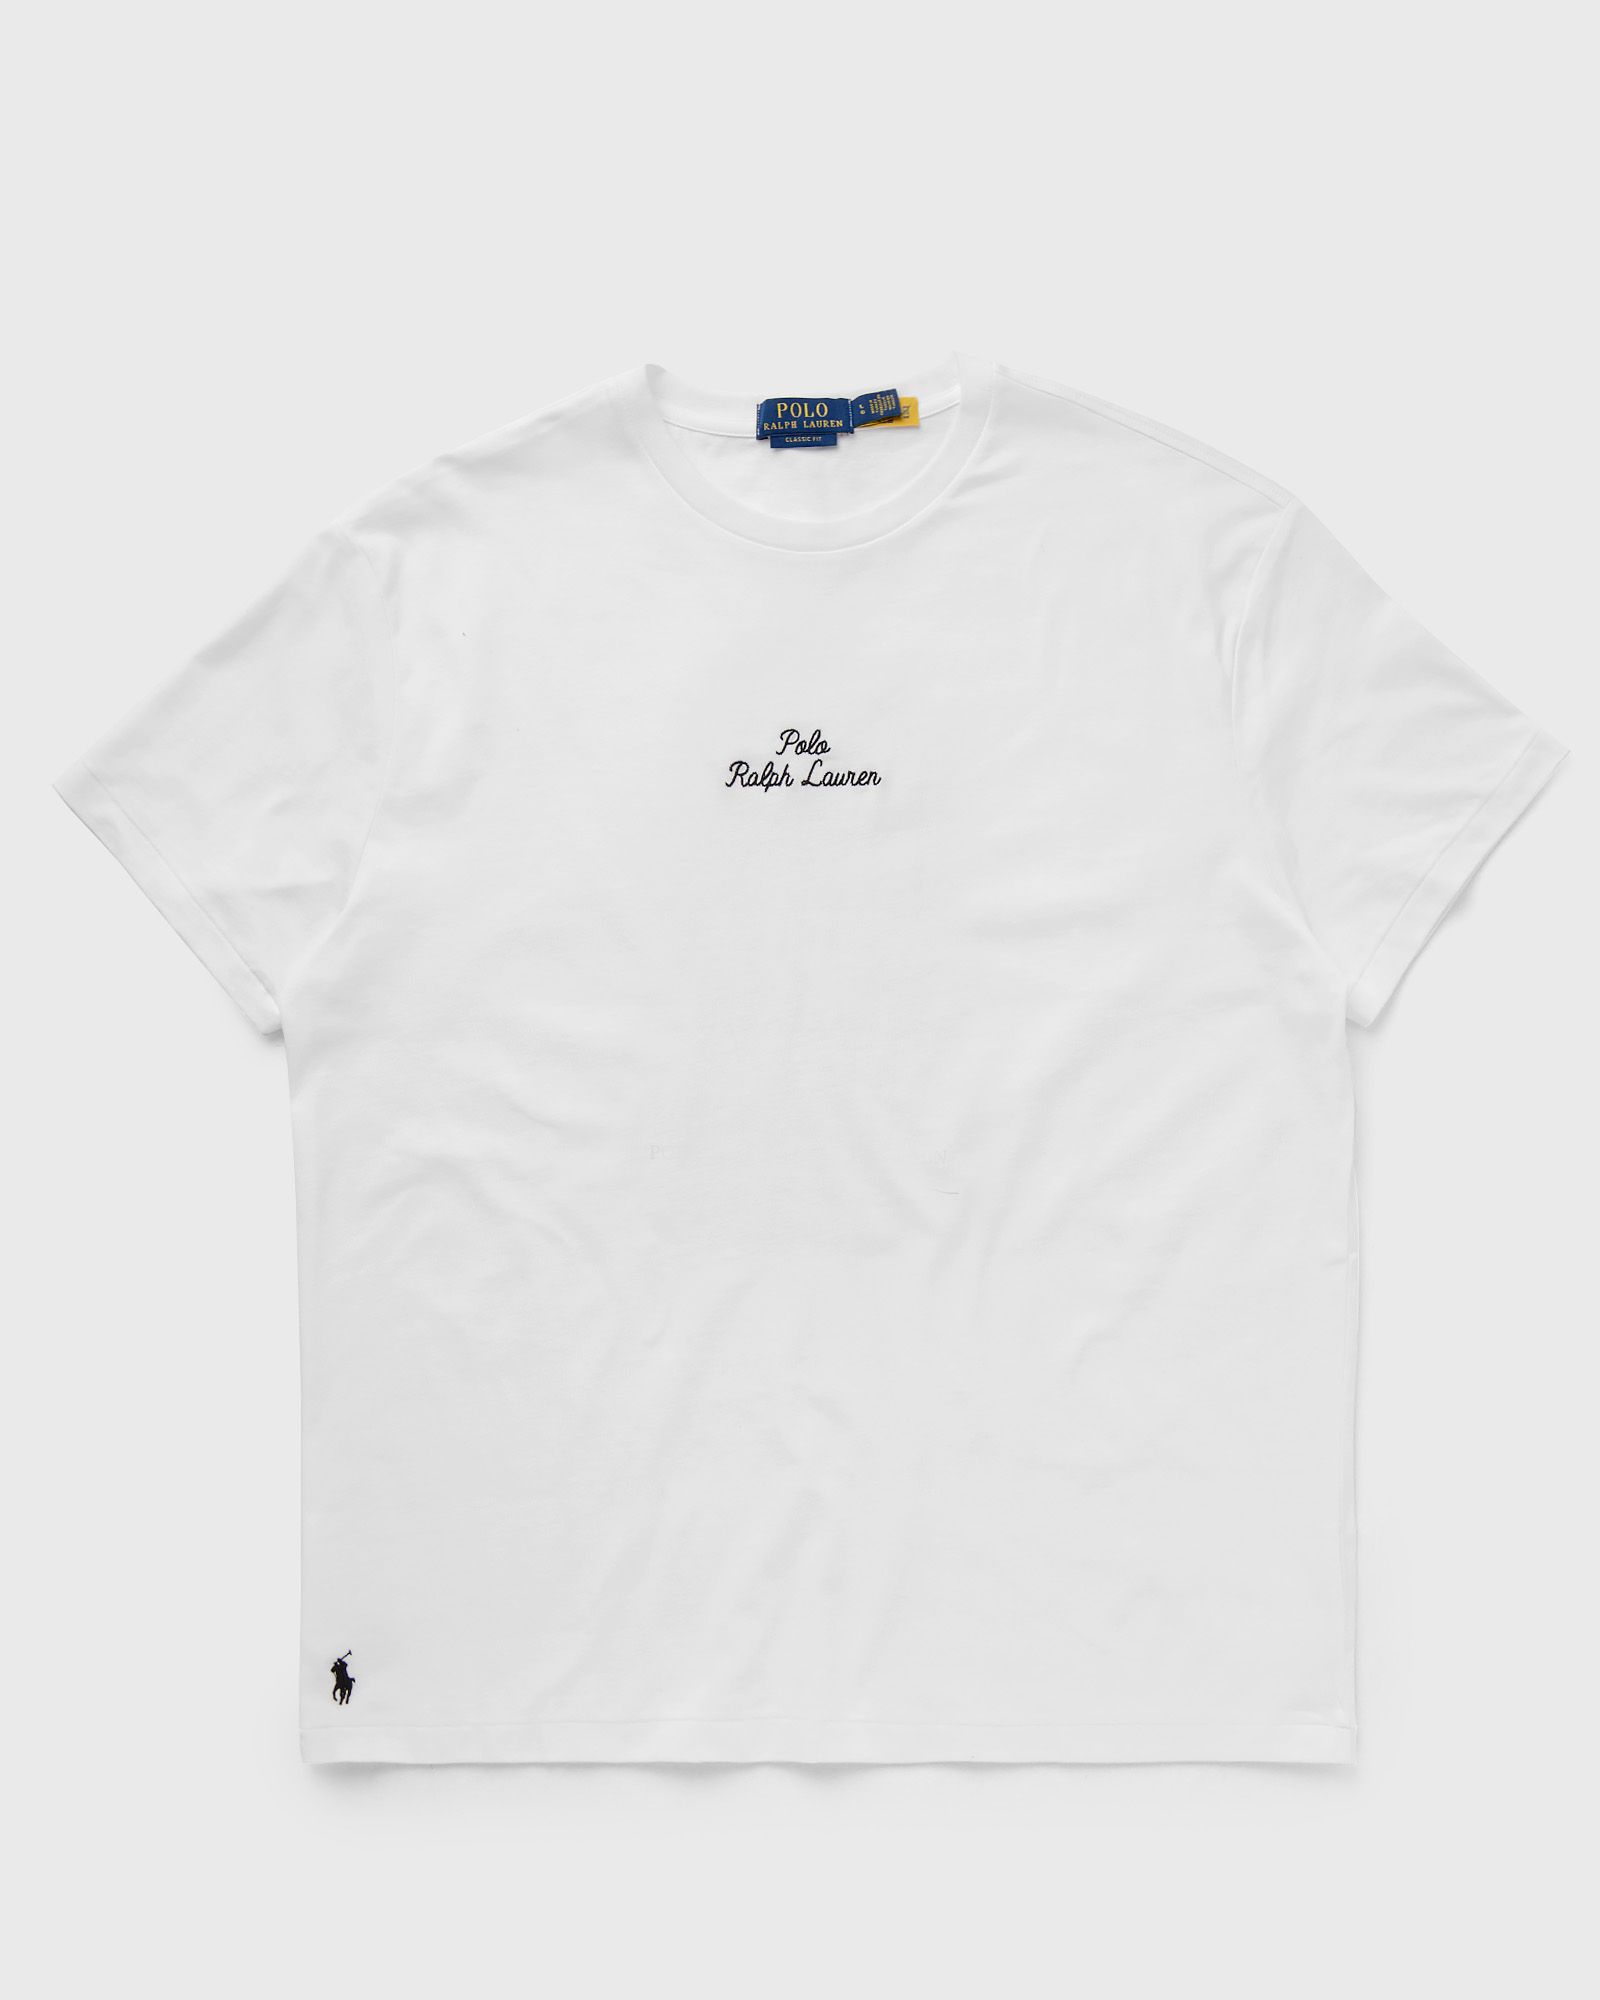 Polo Ralph Lauren - short sleeve-tee men shortsleeves white in größe:xxl